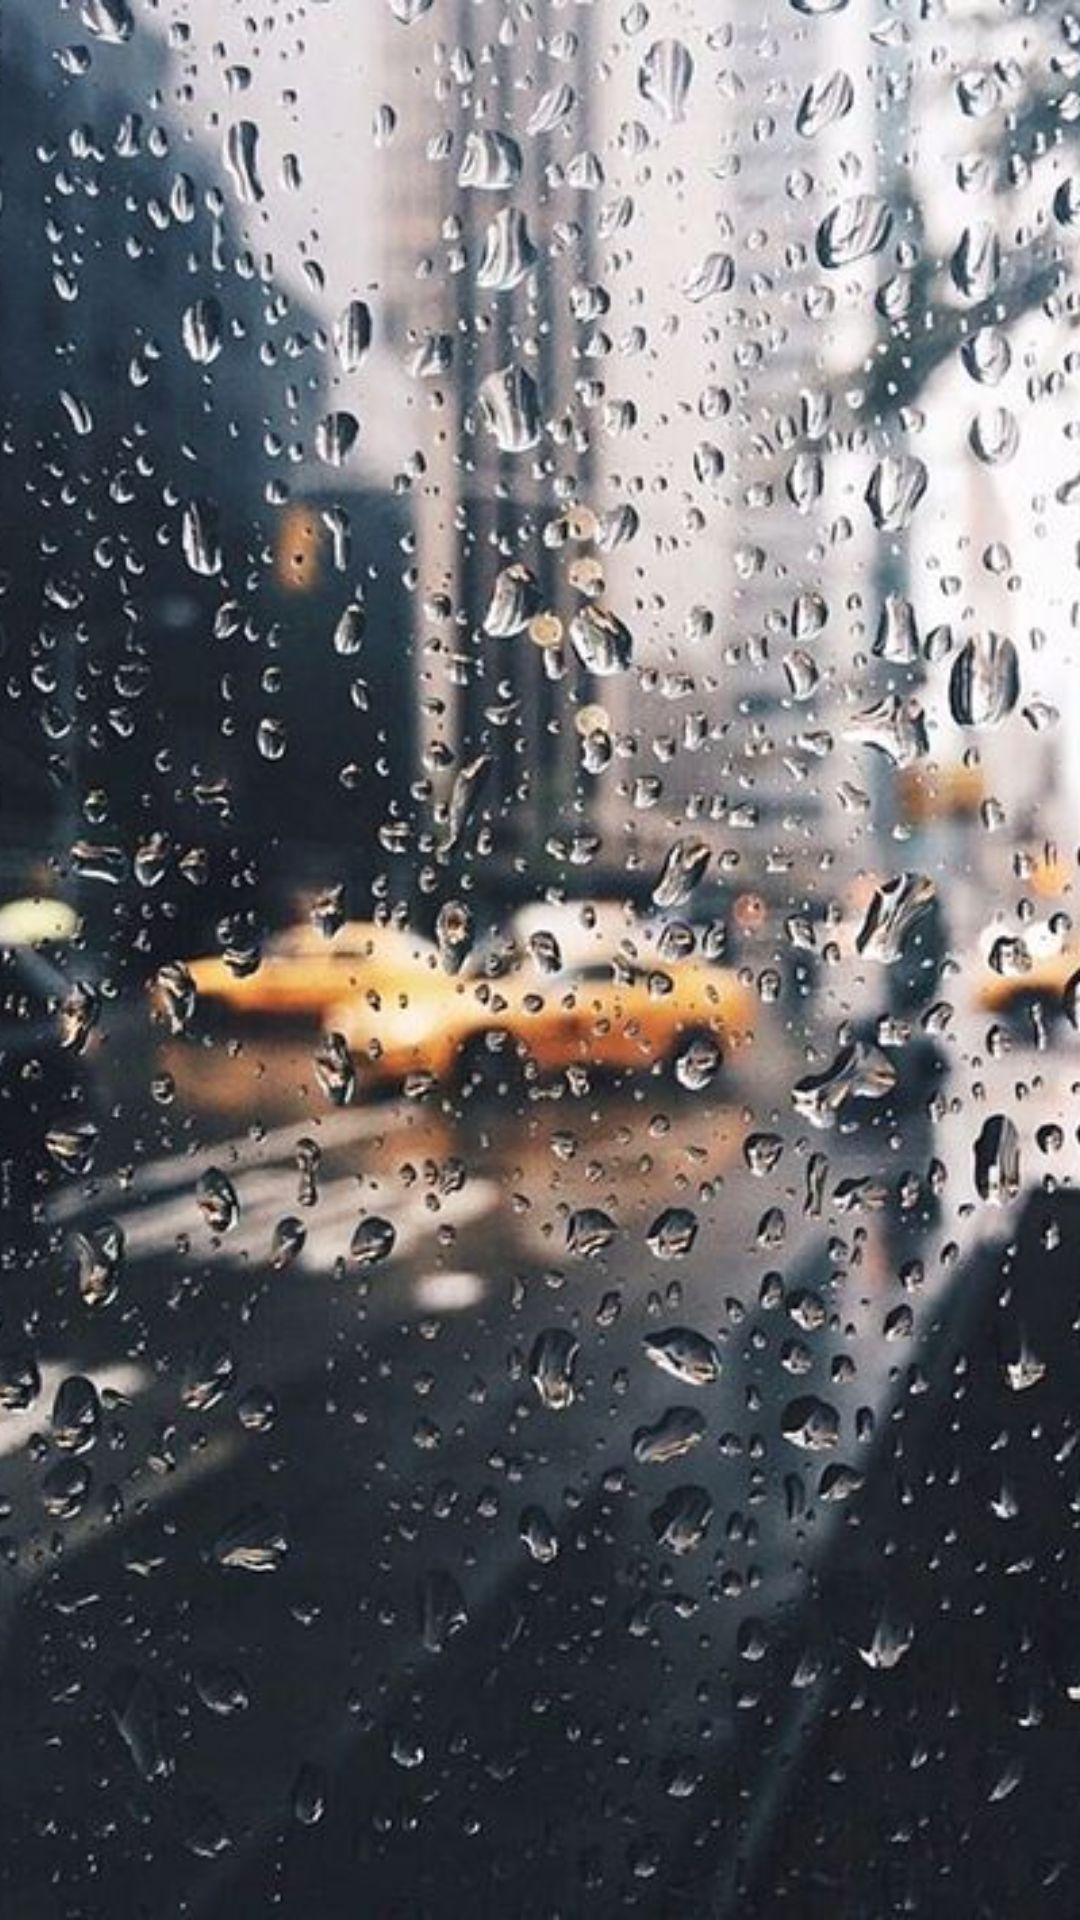 Rain Wallpapers - Top 35 Best Rain